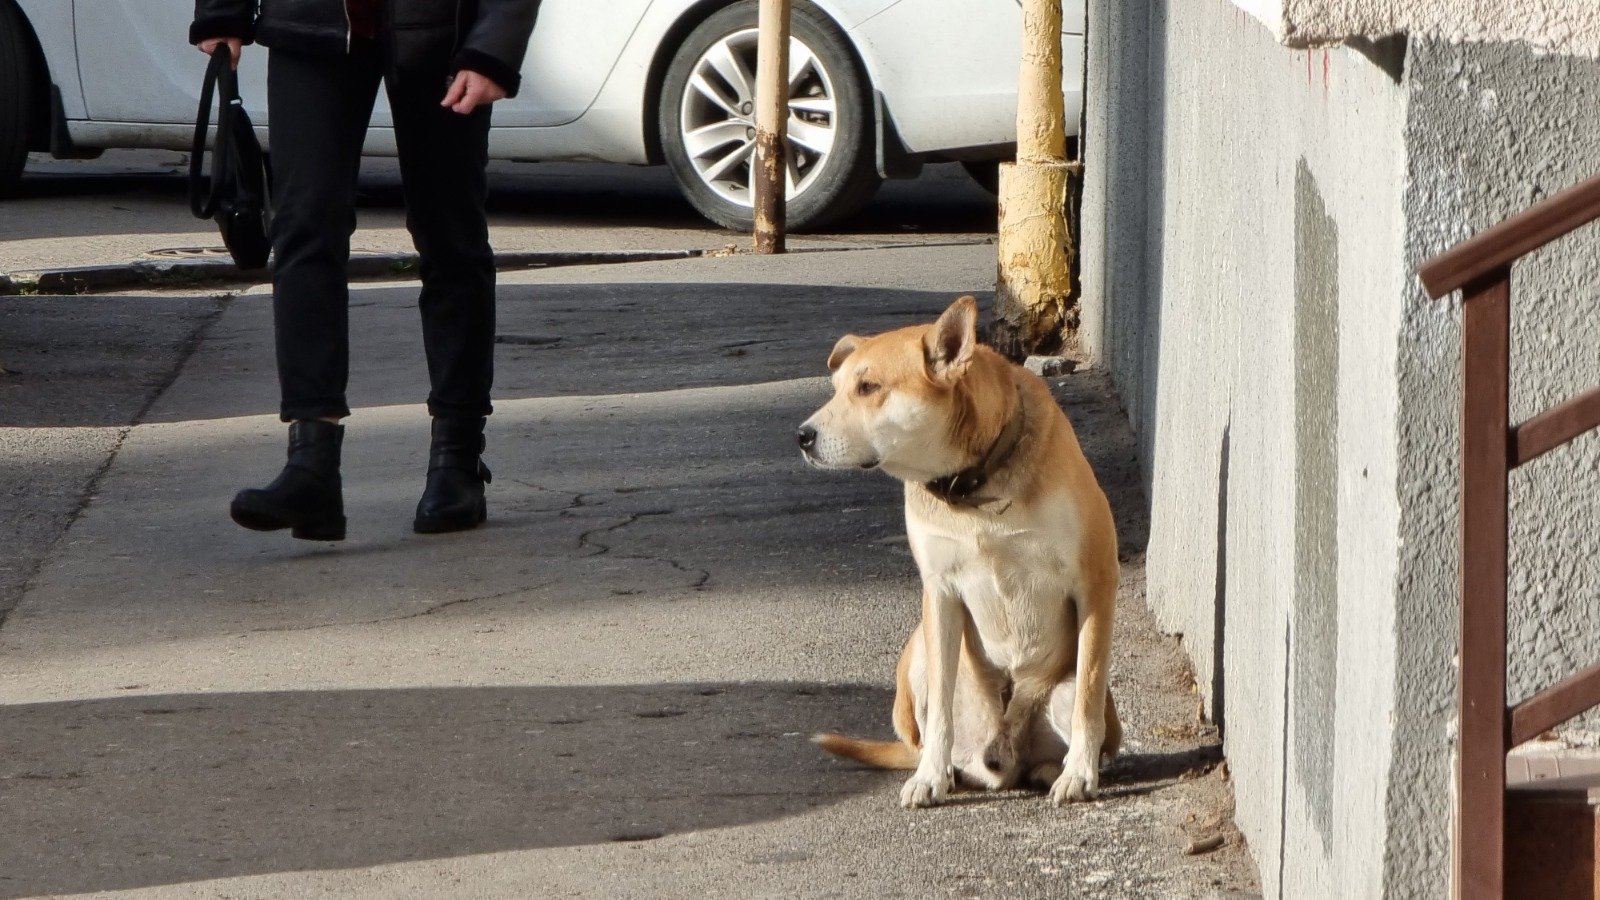 В Левенцовке в Ростове собака изуродовали лицо 4-летнего мальчика и пошла дальше гулять